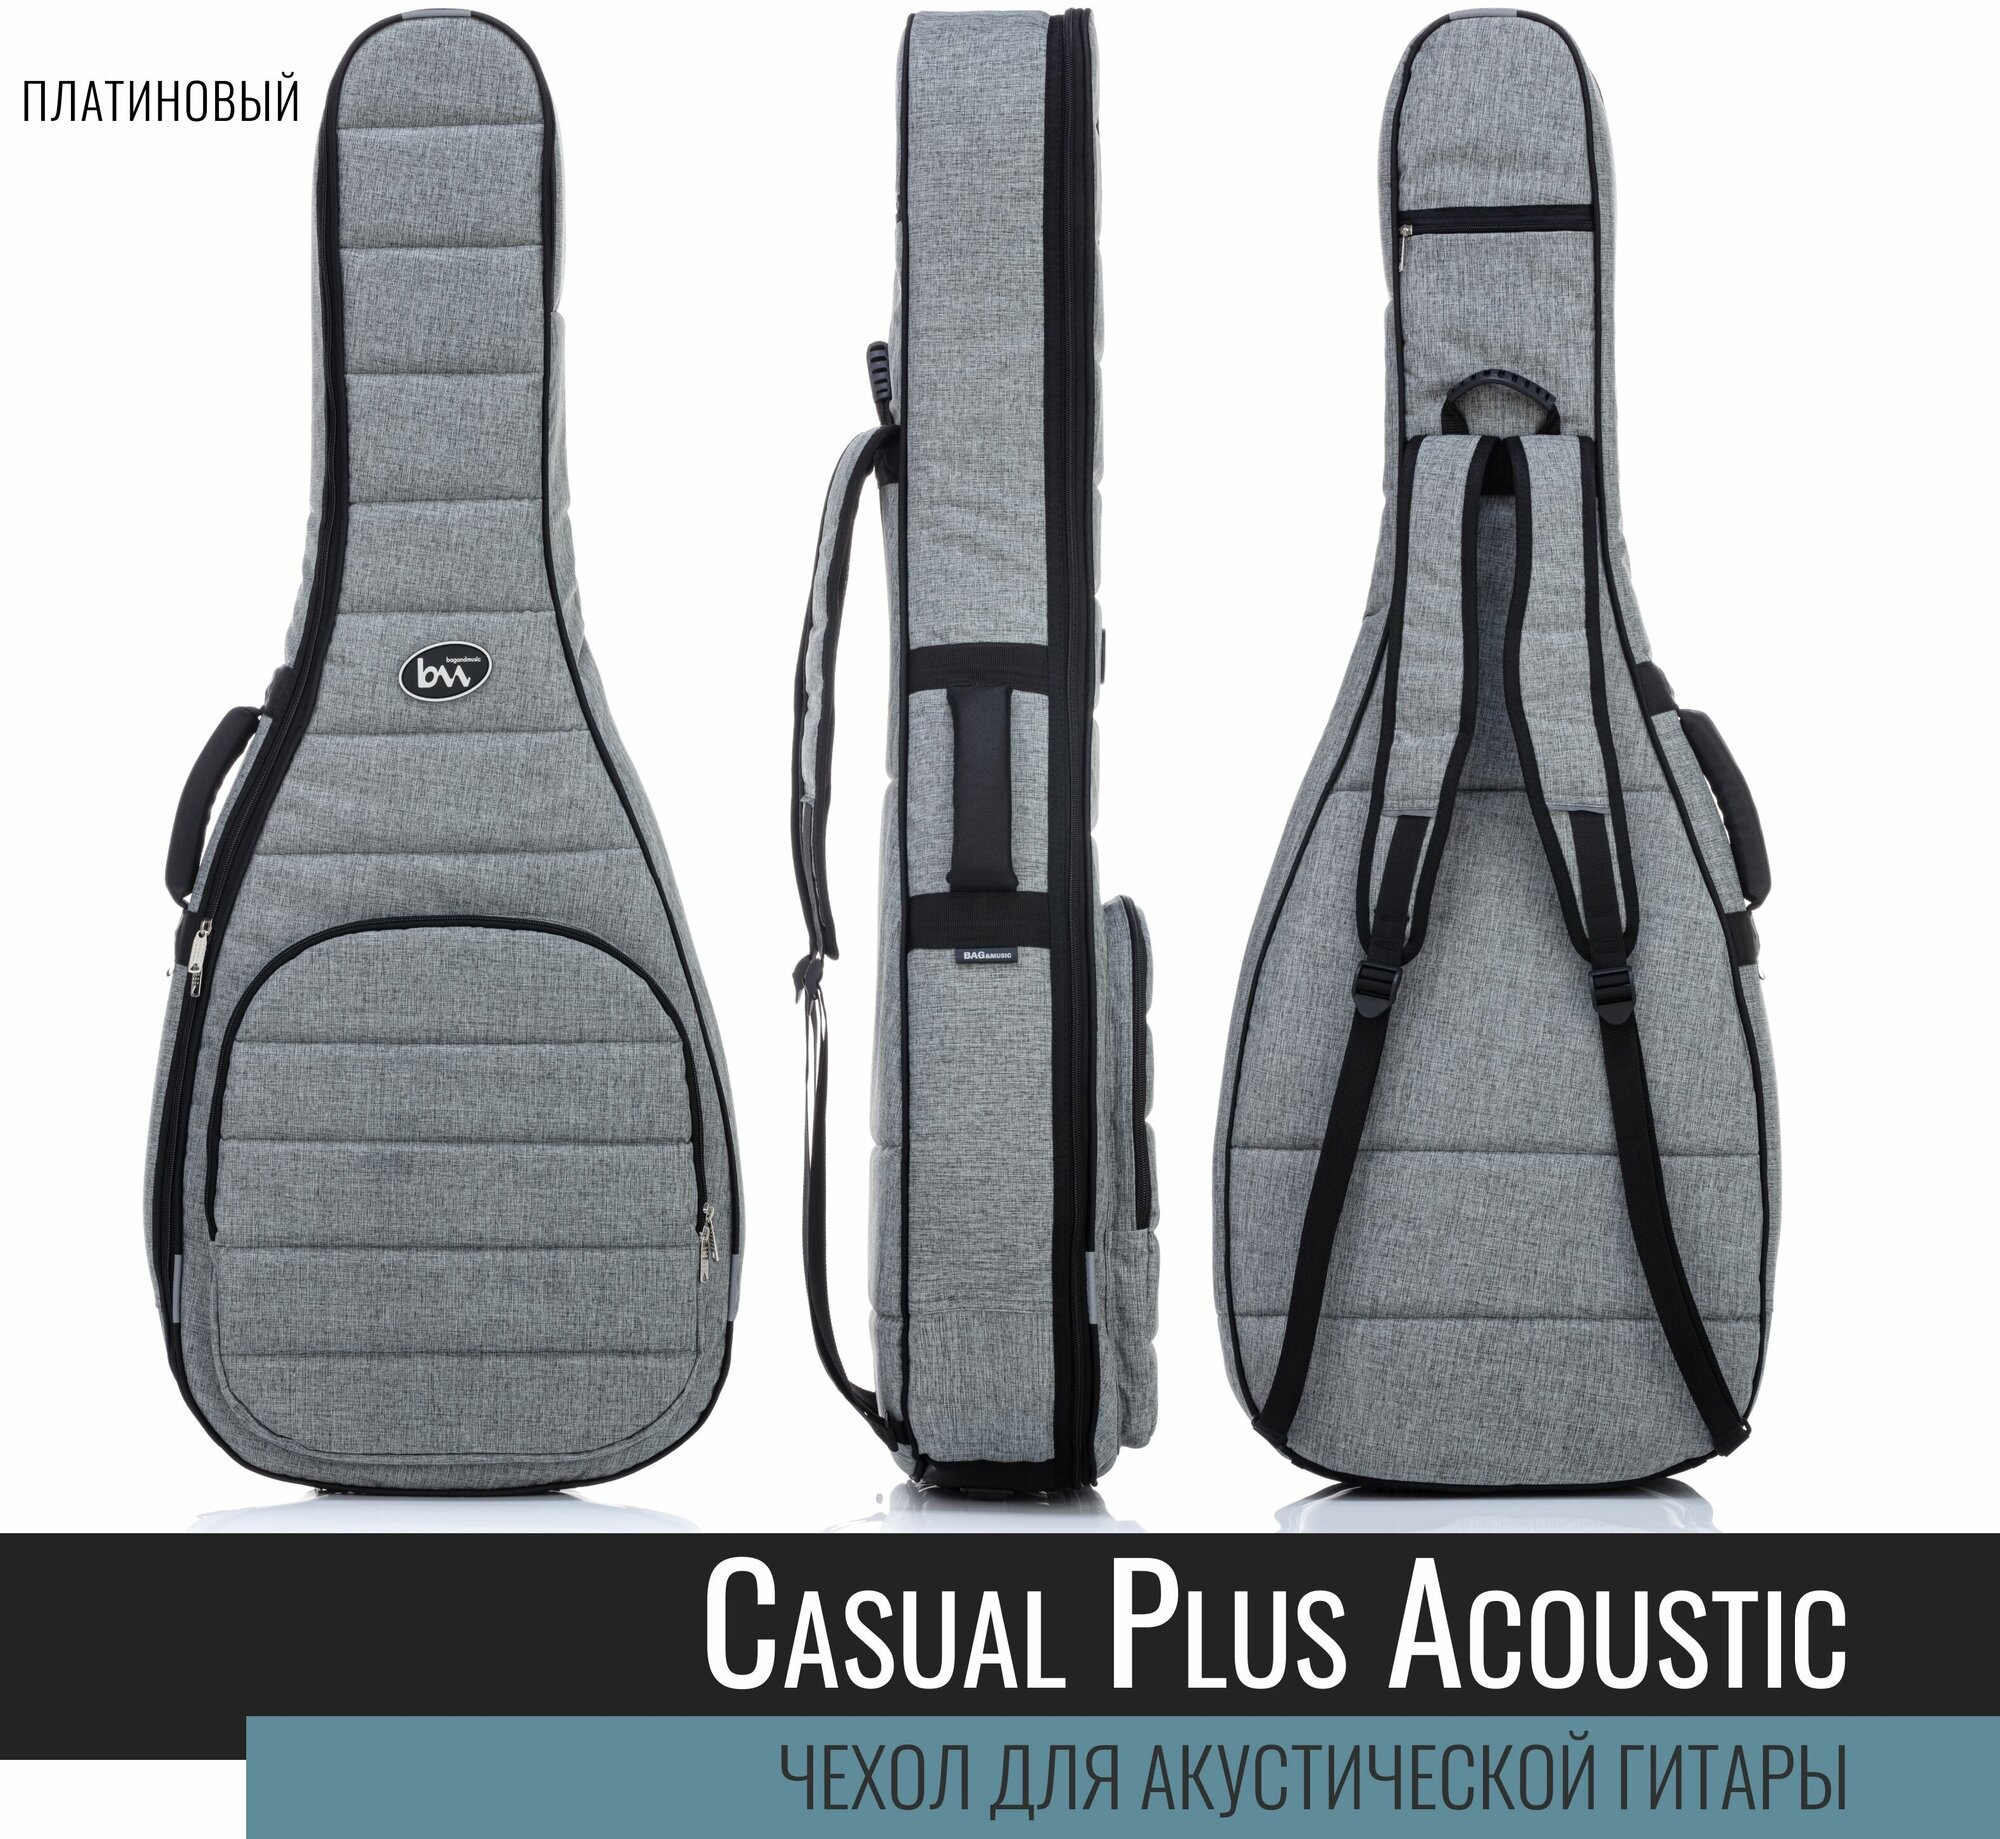 Чехол для акустической гитары BAG&music Acoustic Casual Plus (платиновый)